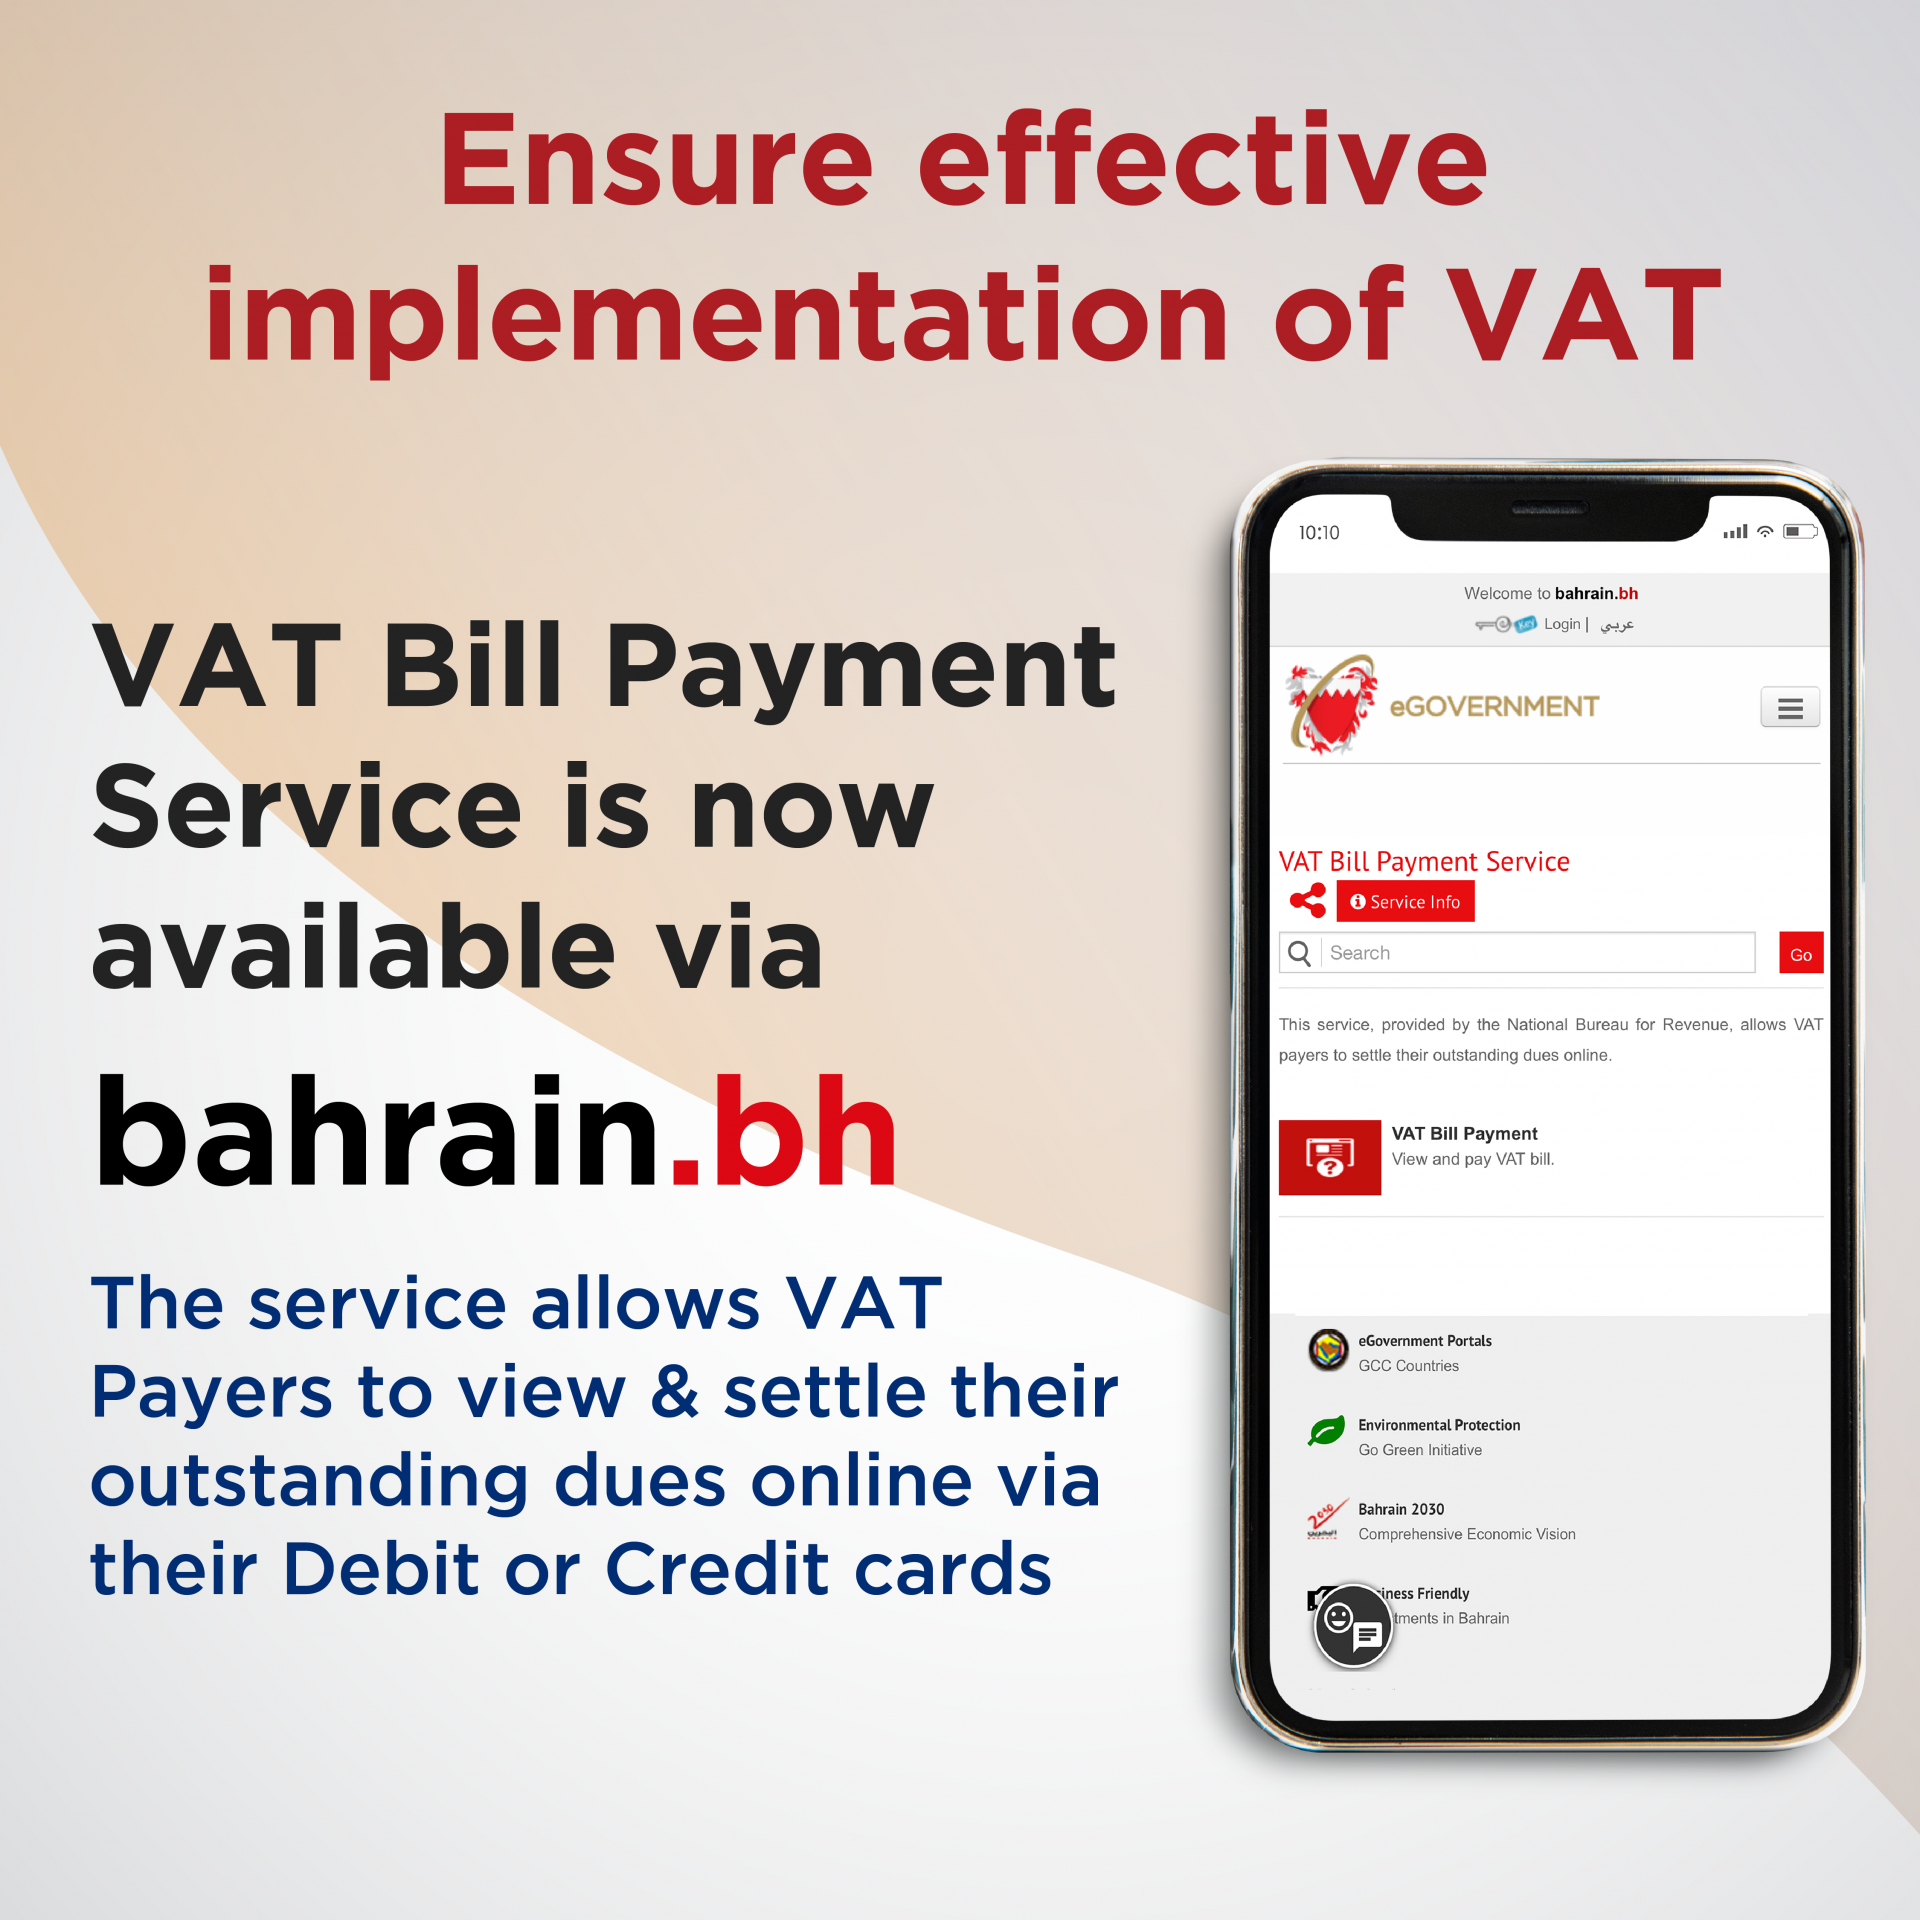 VAT bahrain.bh